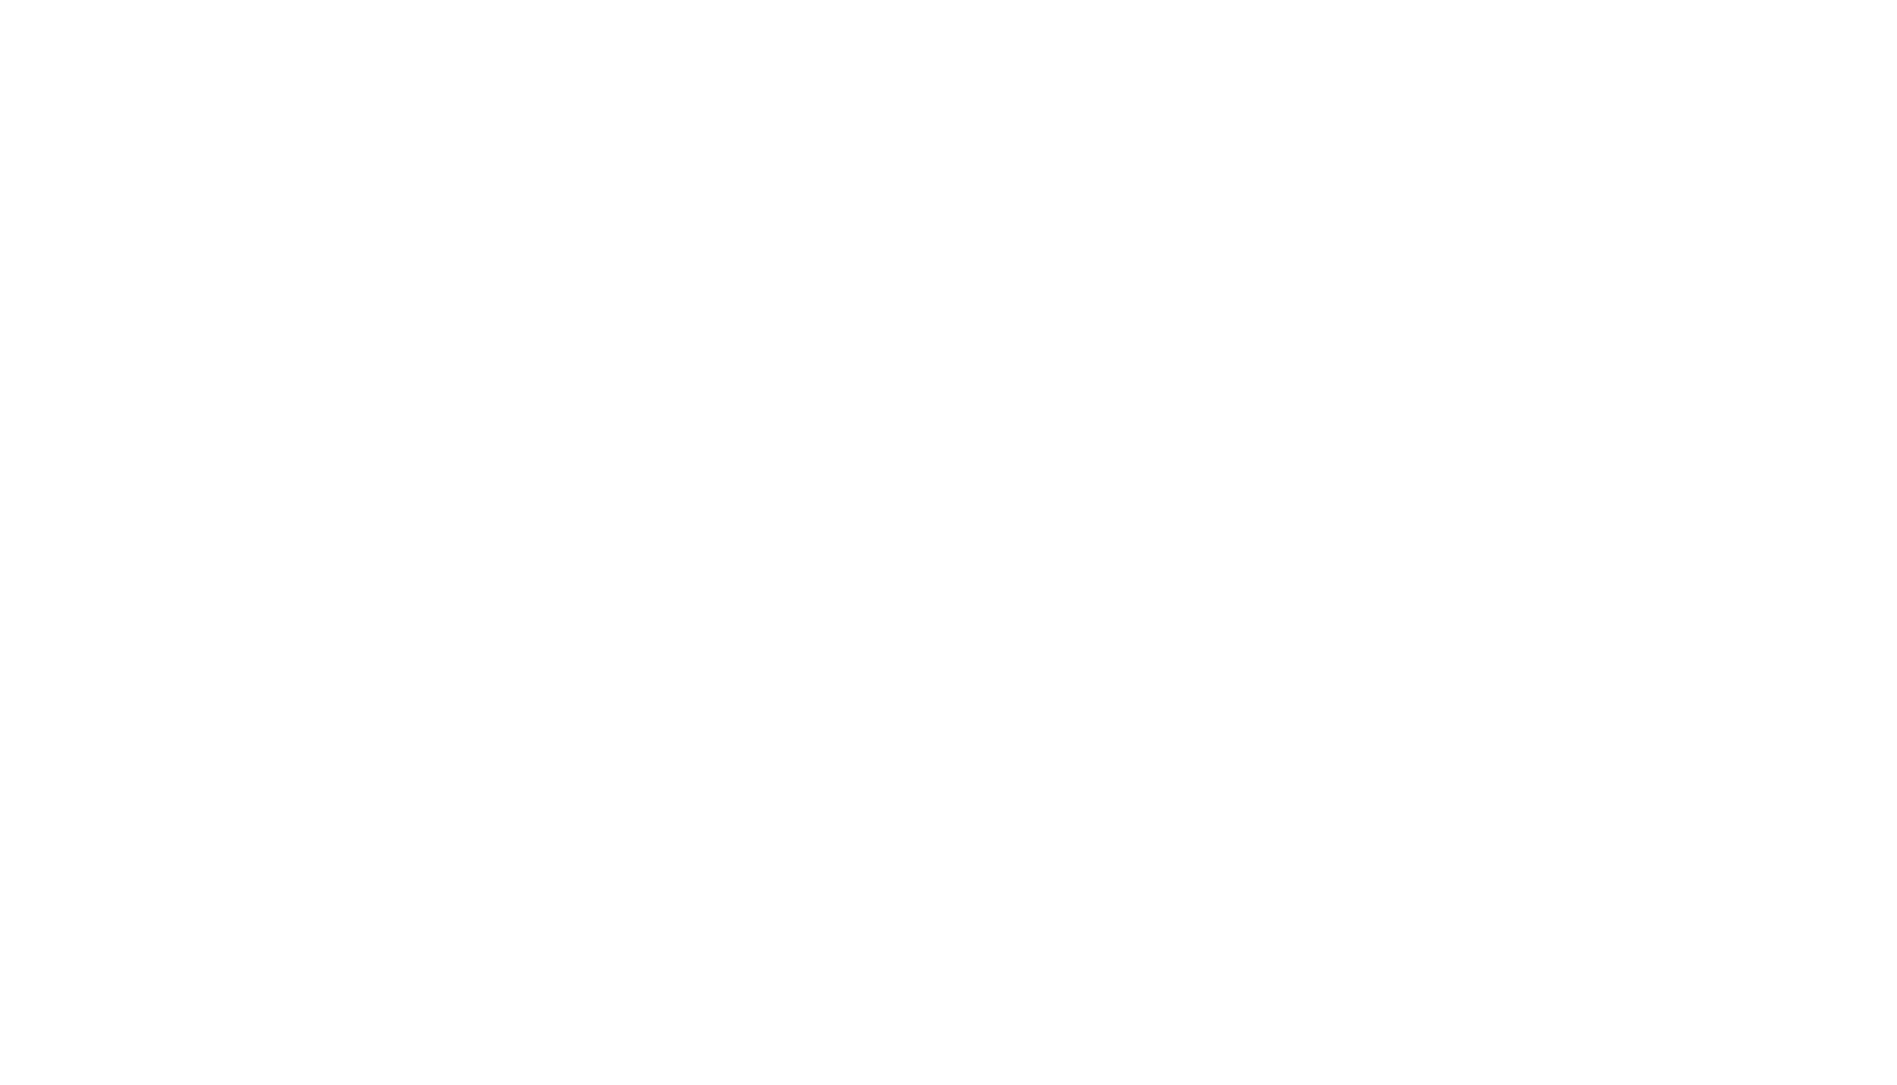 Queer Media Network